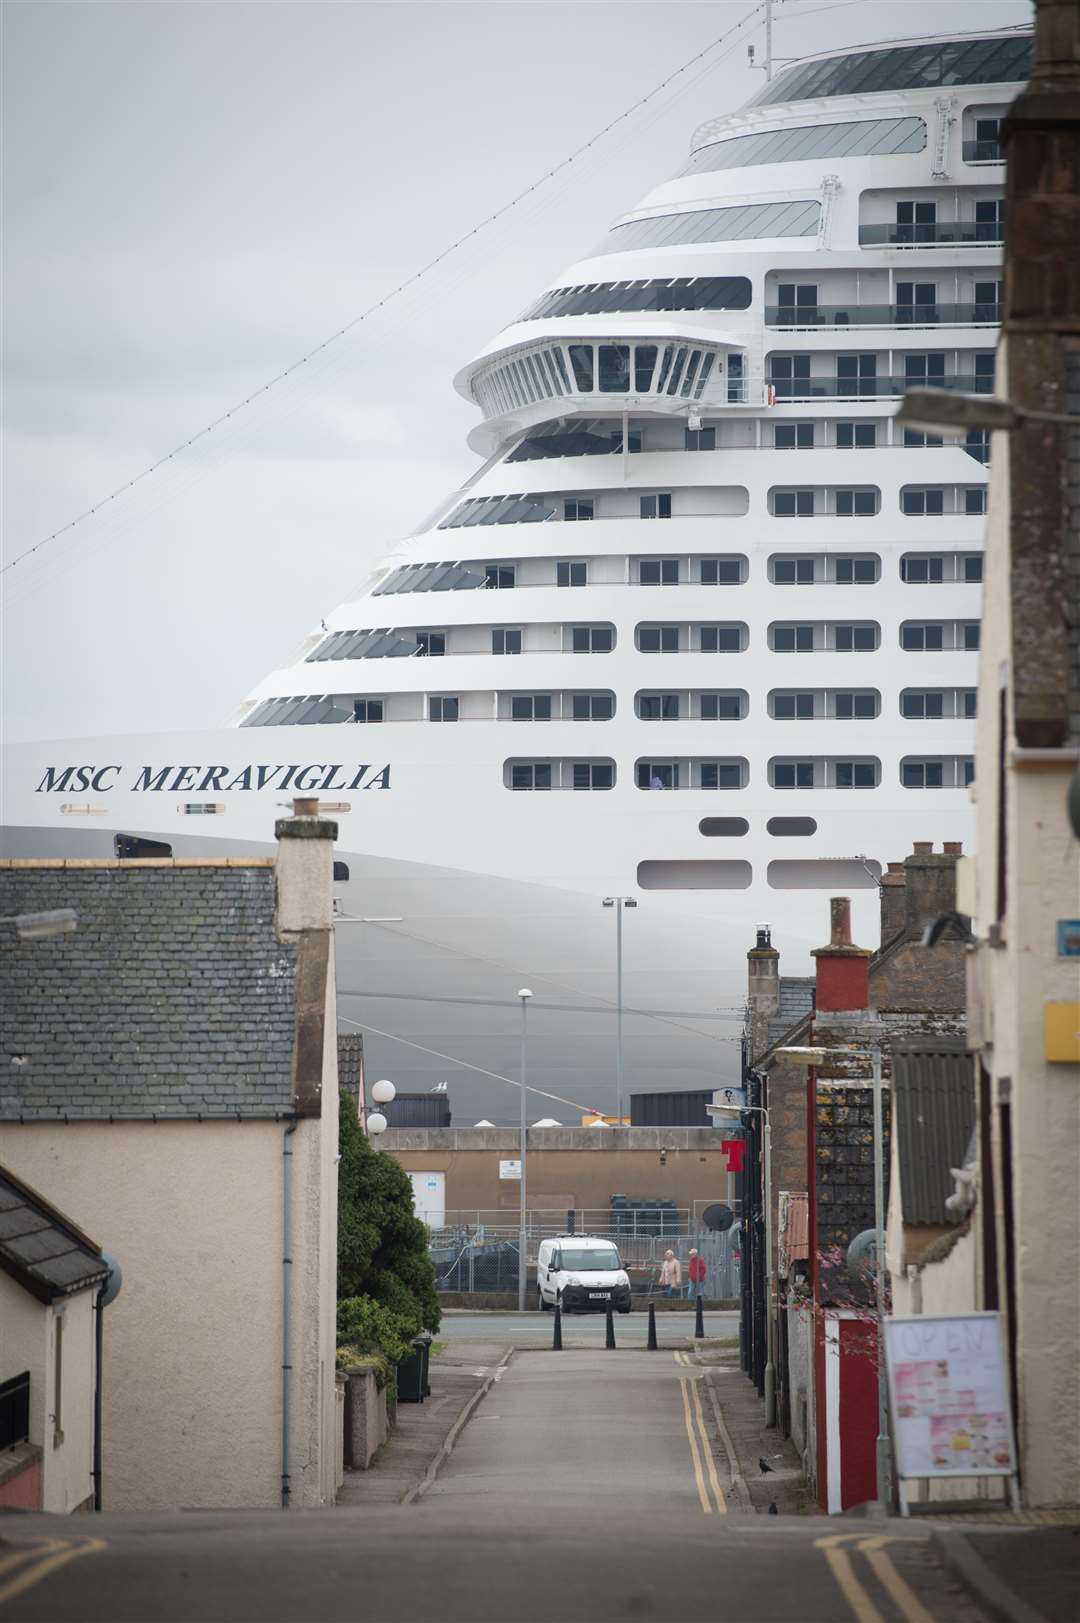 Invergordon will see 180,000 cruise passengers pass through this year.